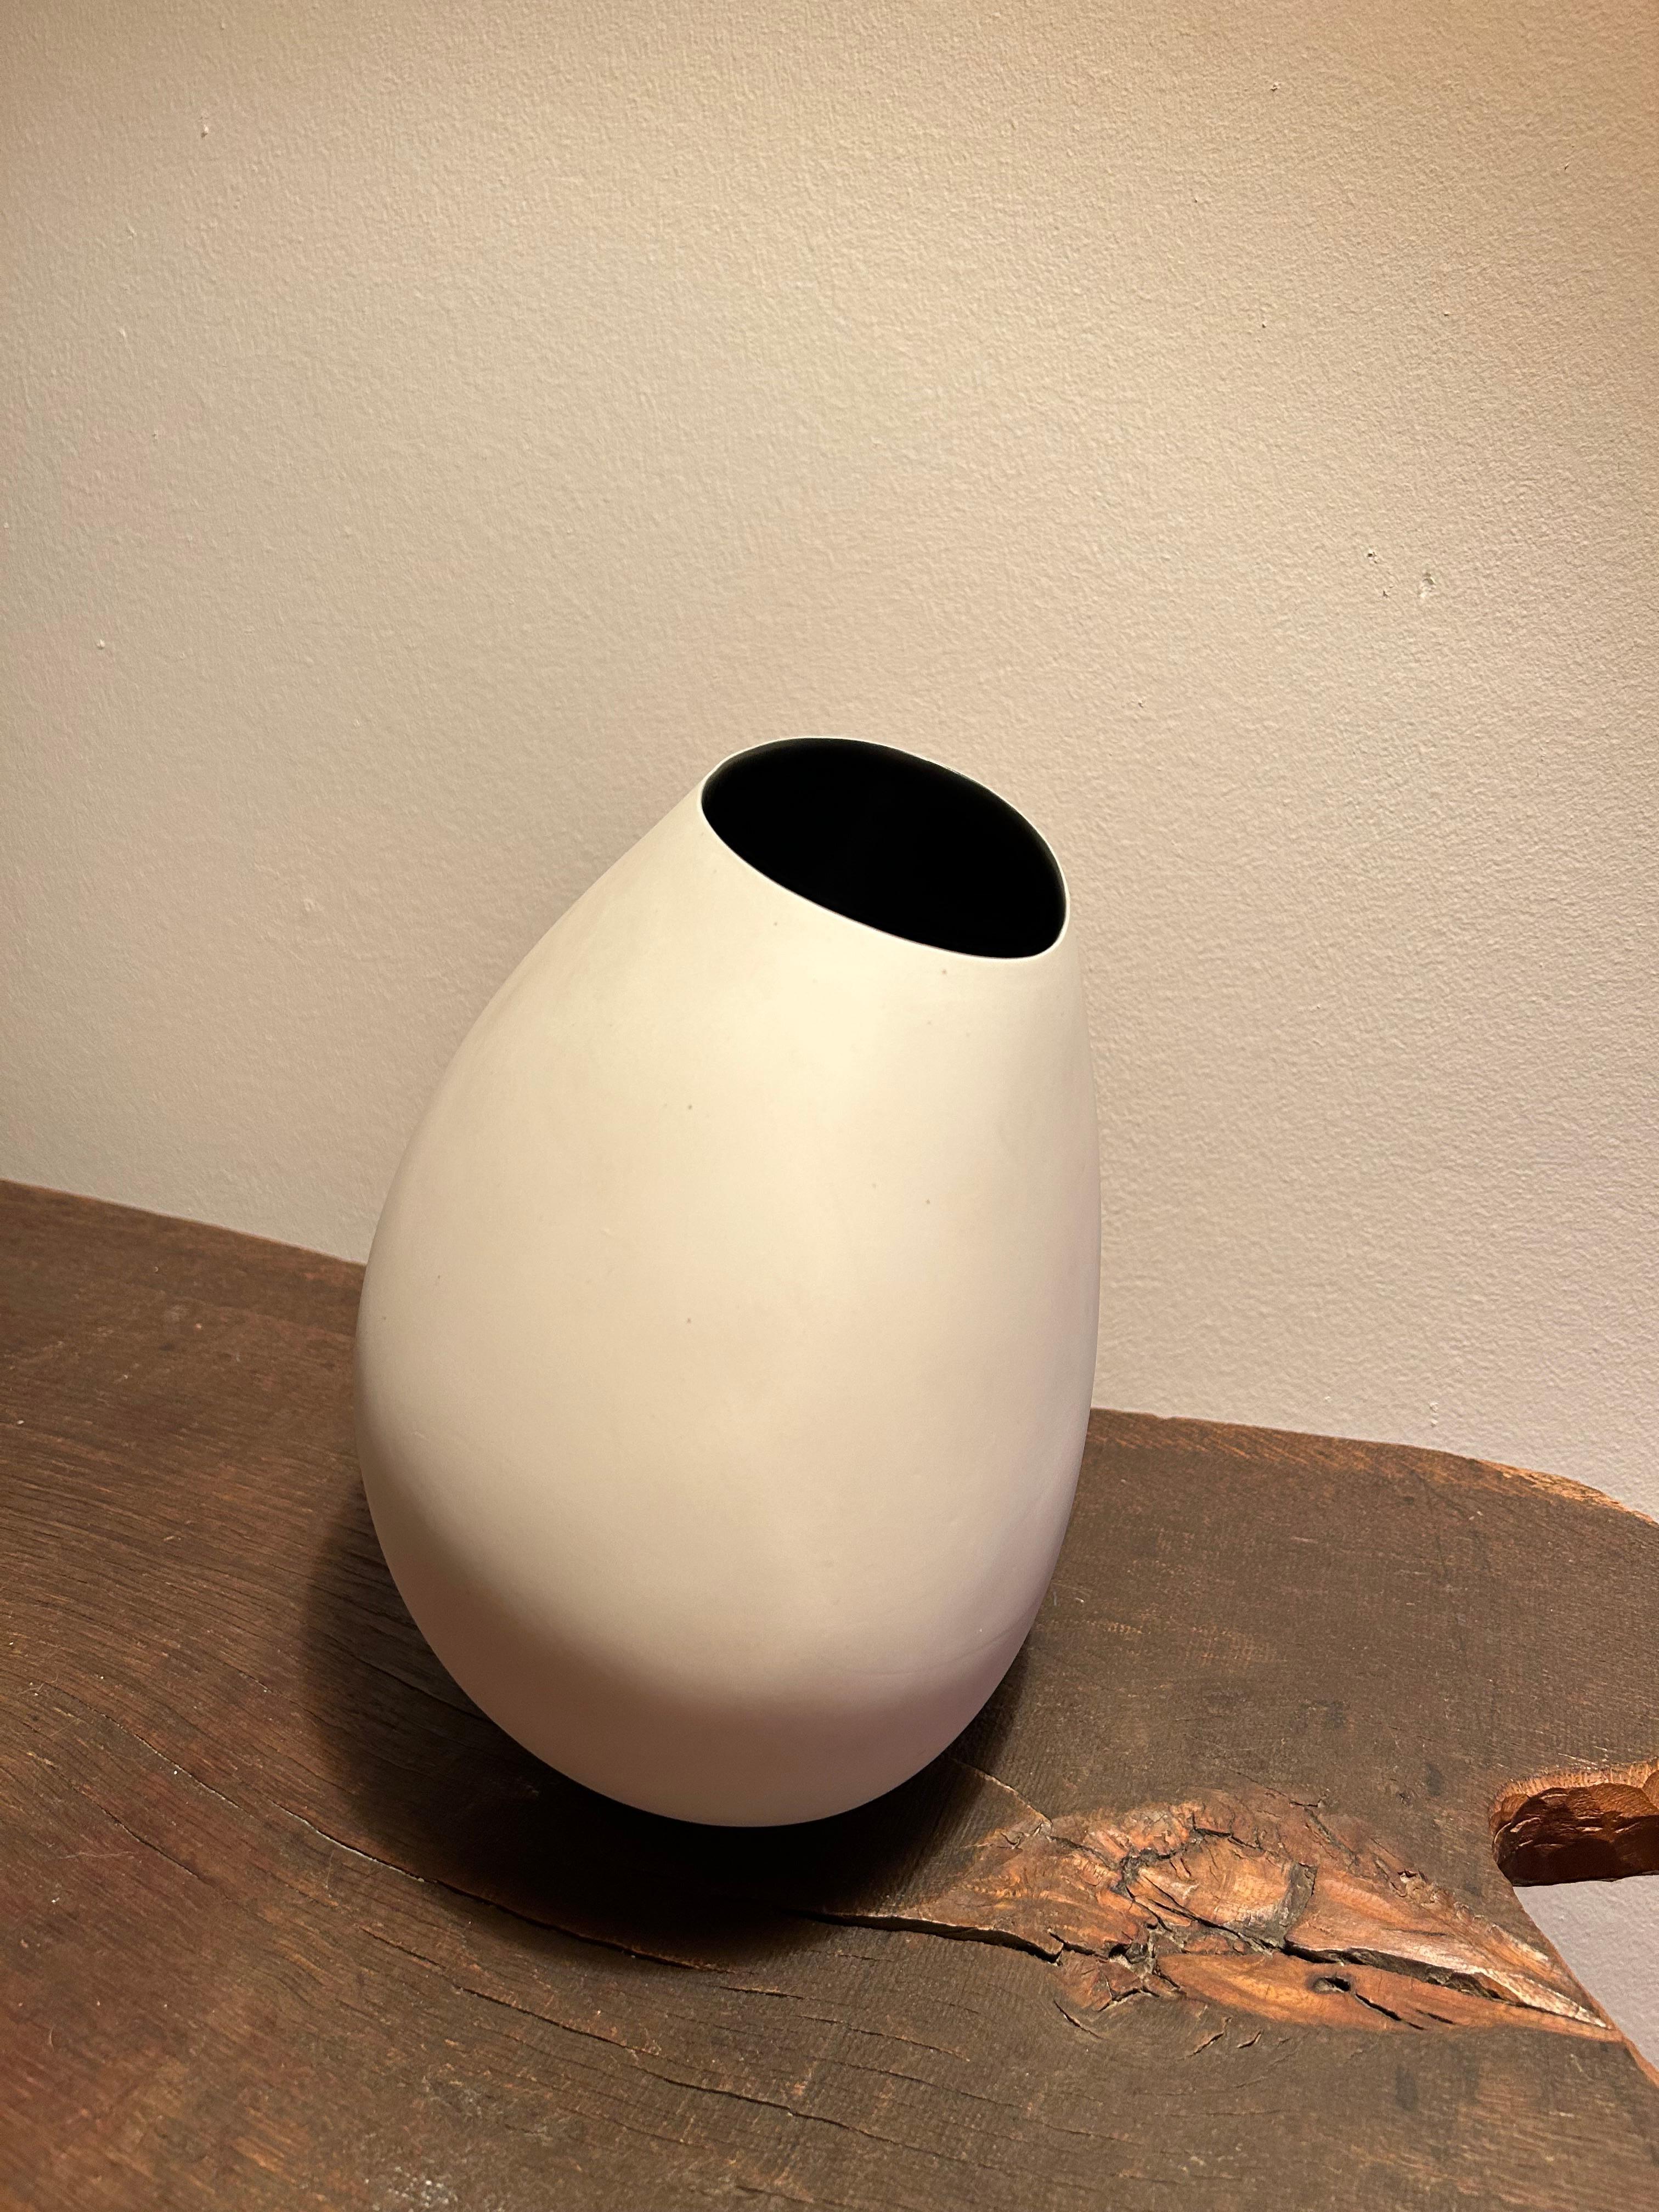 Rare et important vase organique de l'artiste céramiste danois Bente Hansen datant de 2001. Issu d'un lot de 100 pièces, ce modèle porte le numéro 49 sur 100.

Ce vase est la pièce centrale parfaite pour tout style d'intérieur et s'adapte à tous